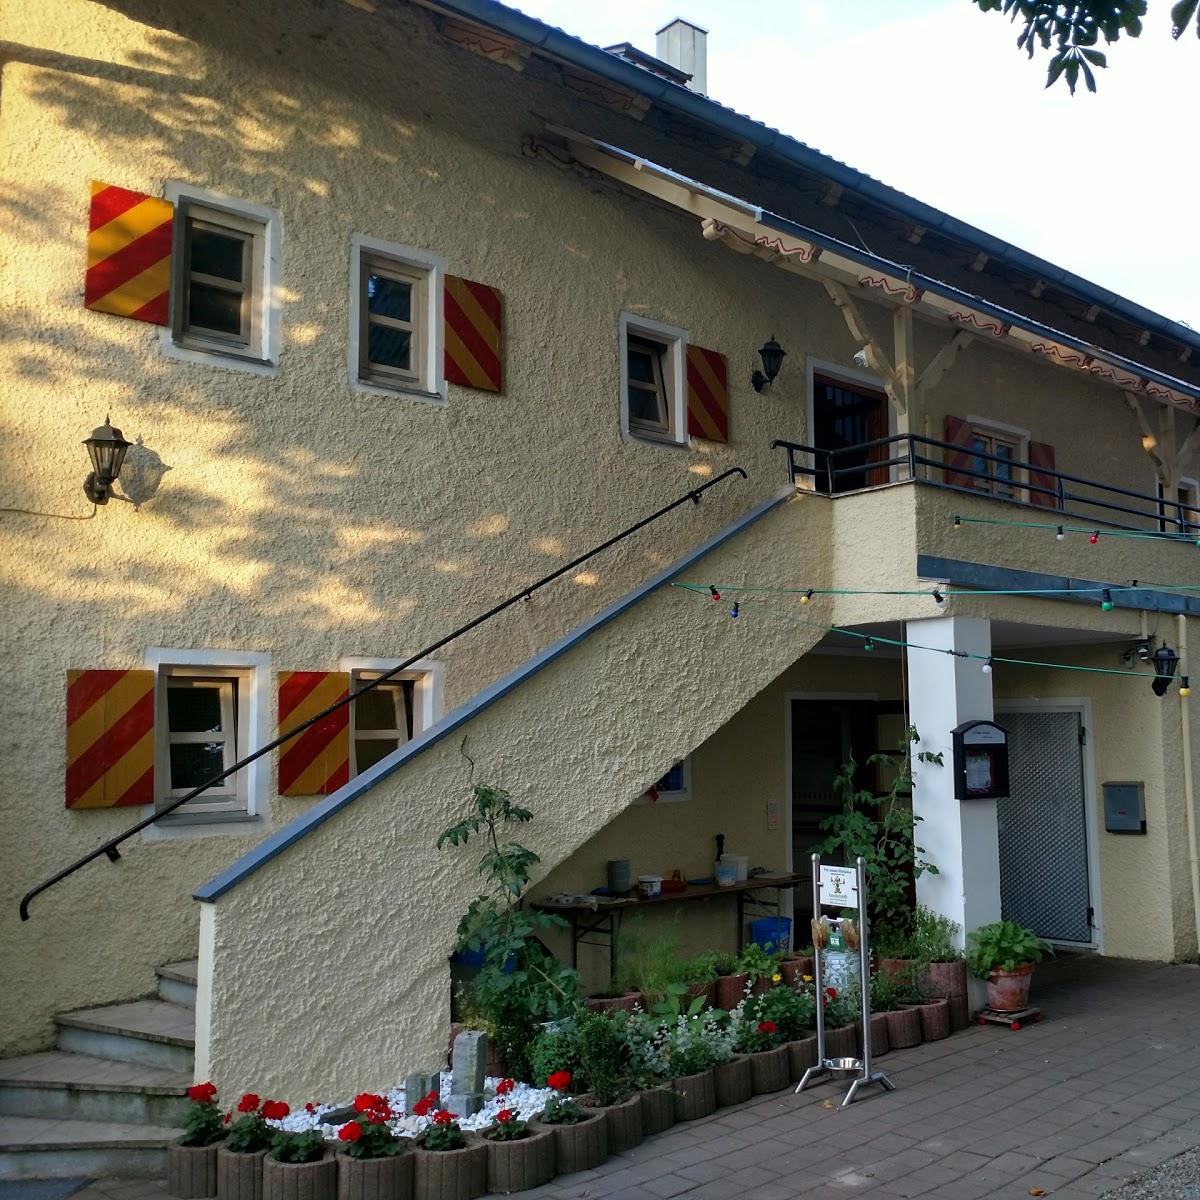 Restaurant "Haslangkreit" in Kühbach